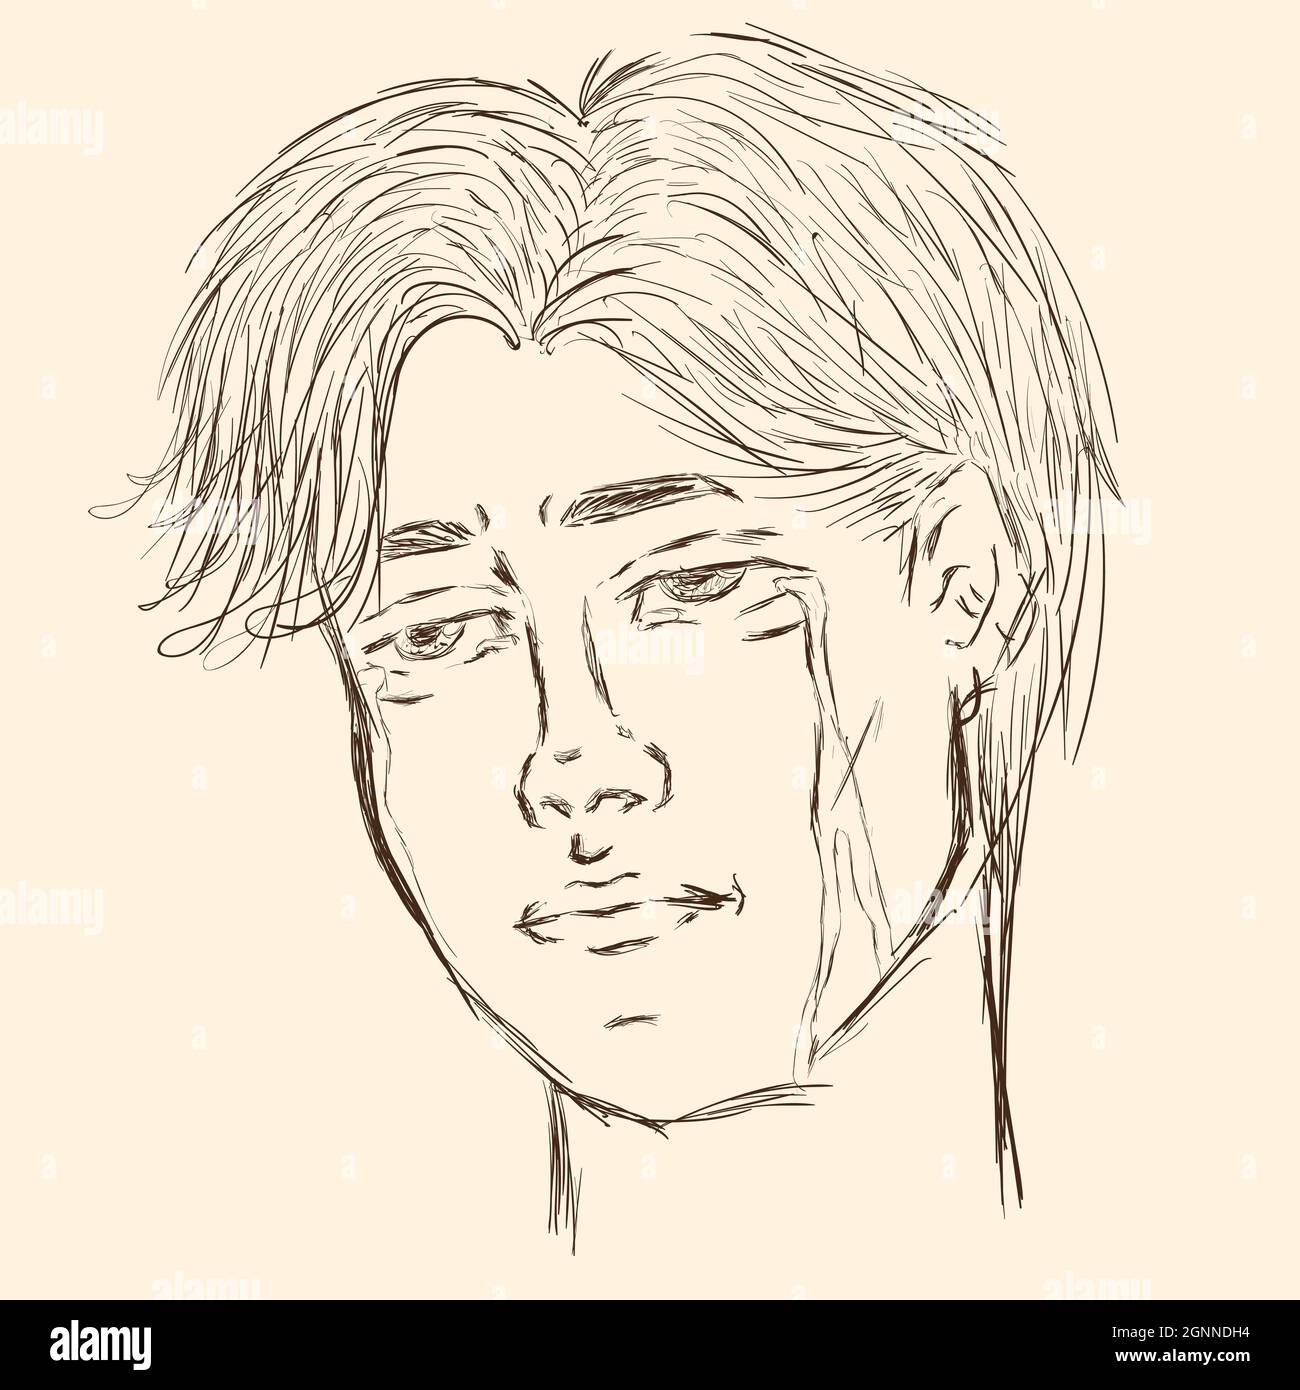 Zeichnung Skizze traurig weinenden Kerl mit Tränen Stock Vektor